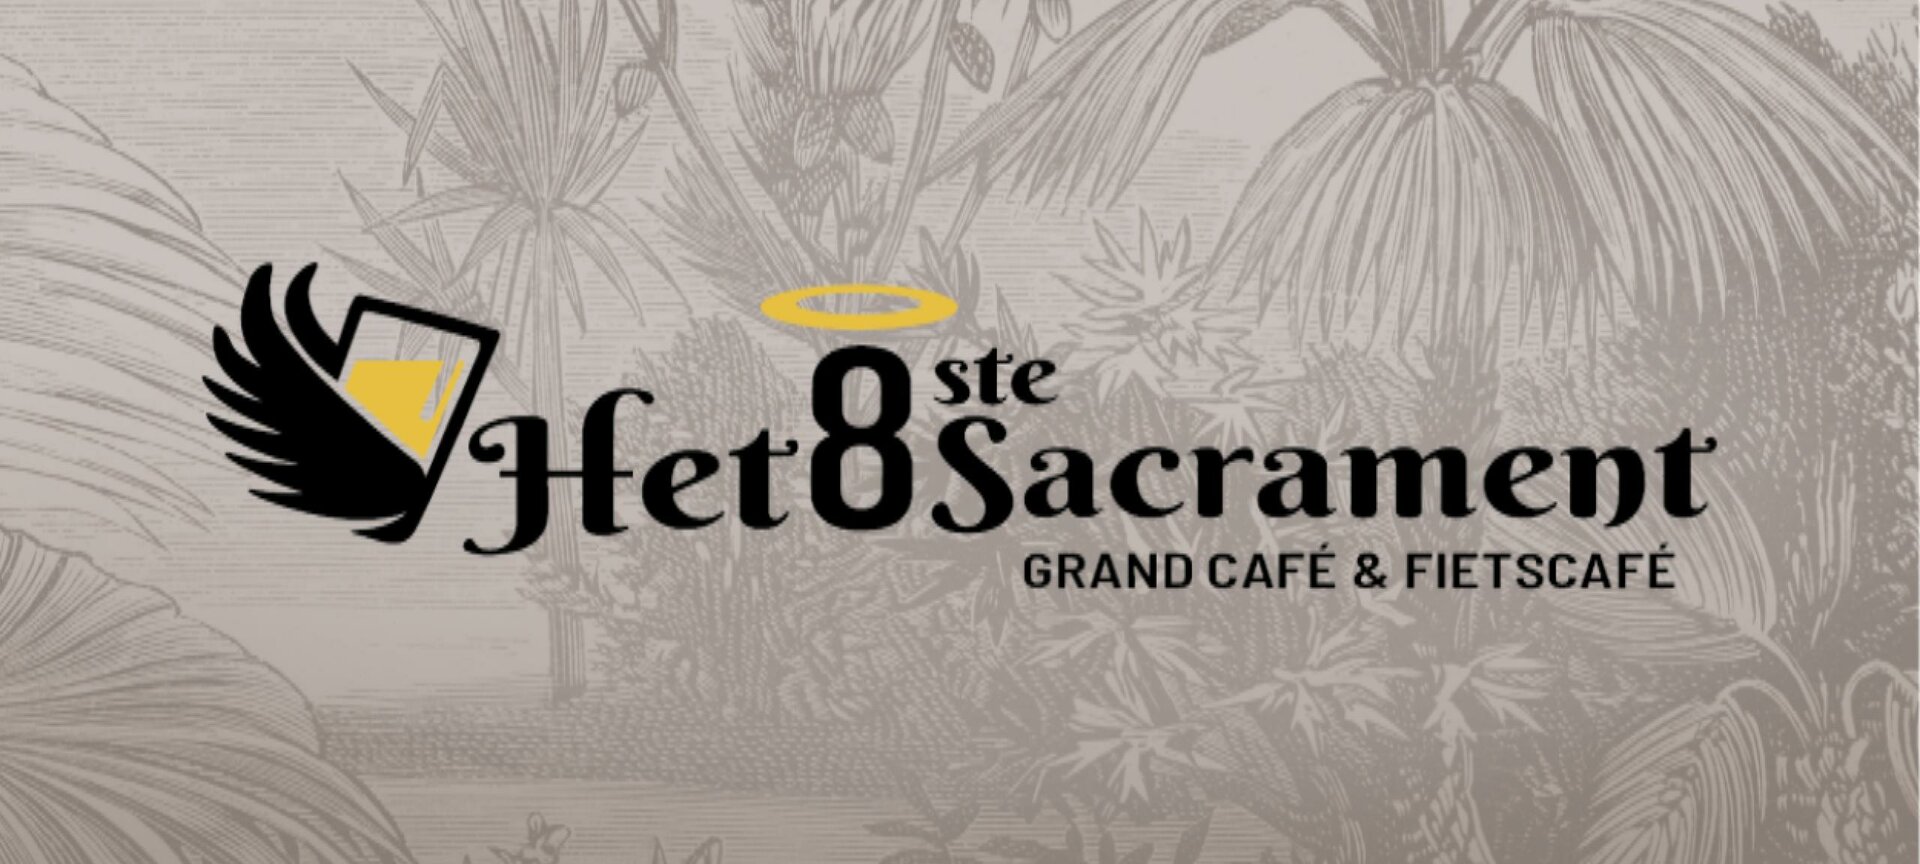 Grand Cafe Het 8ste Sacrament - Logo